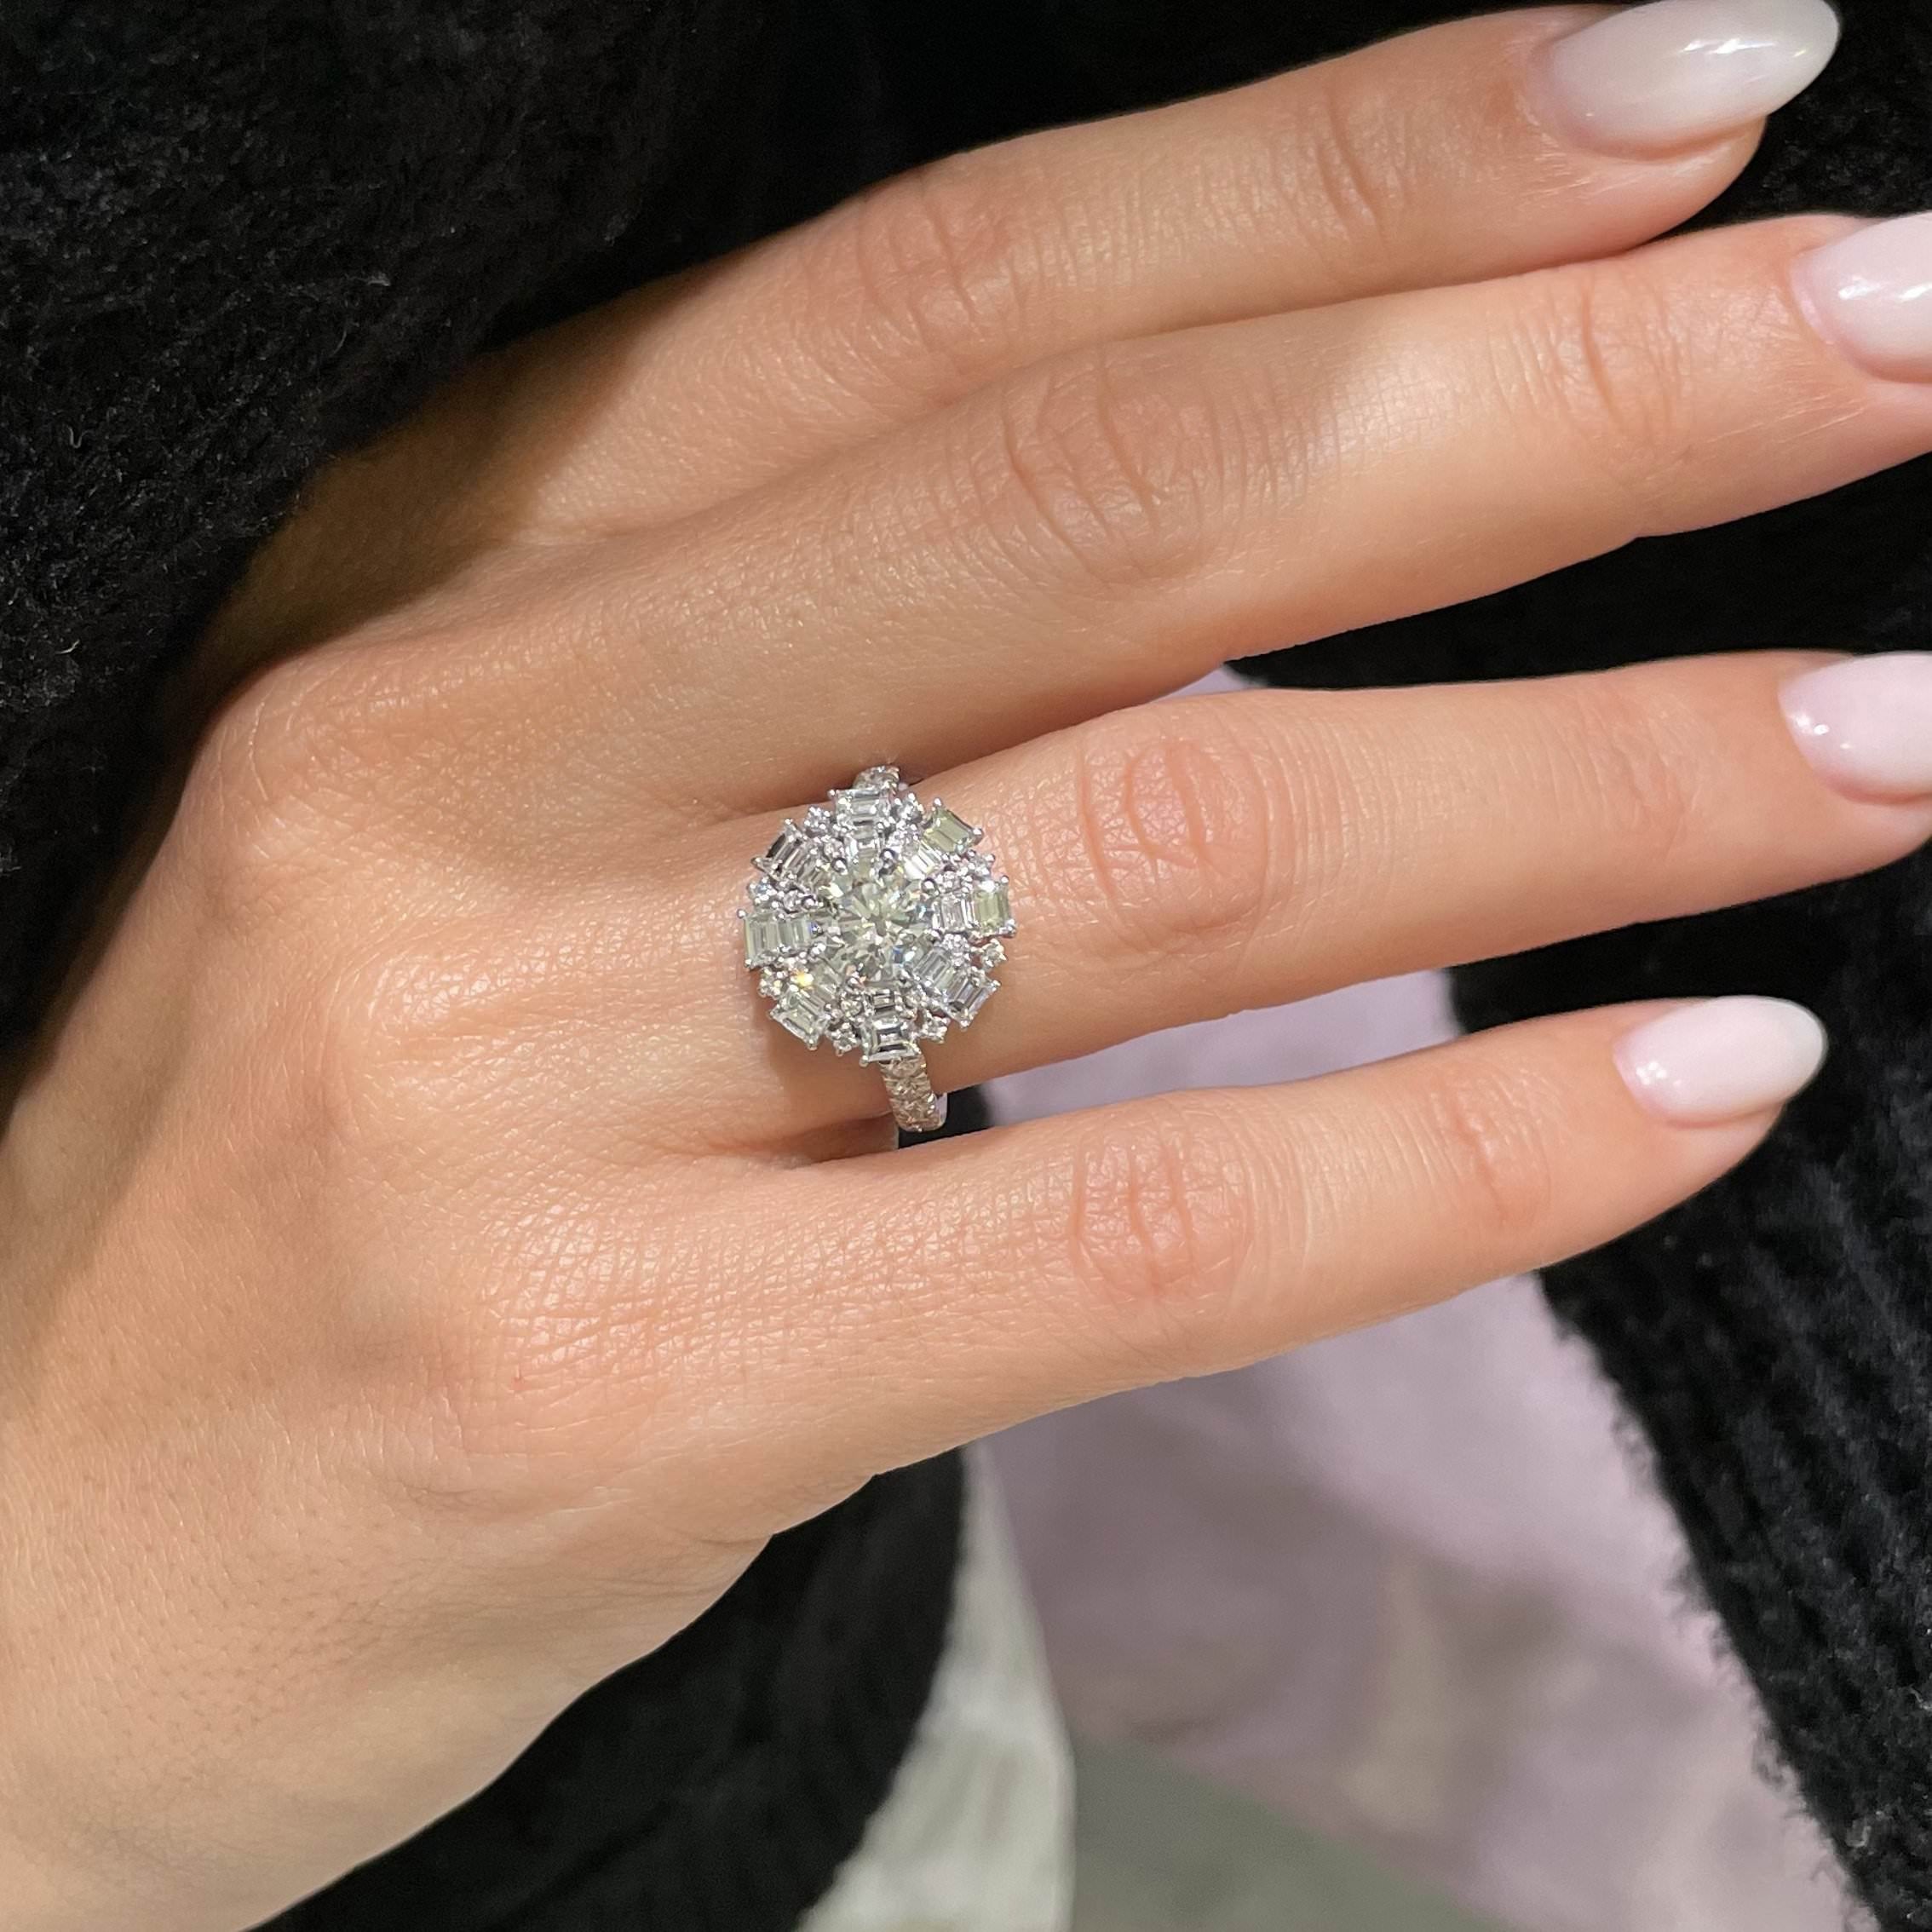 Snowflake Lab Grown Diamond Ring -Platinum